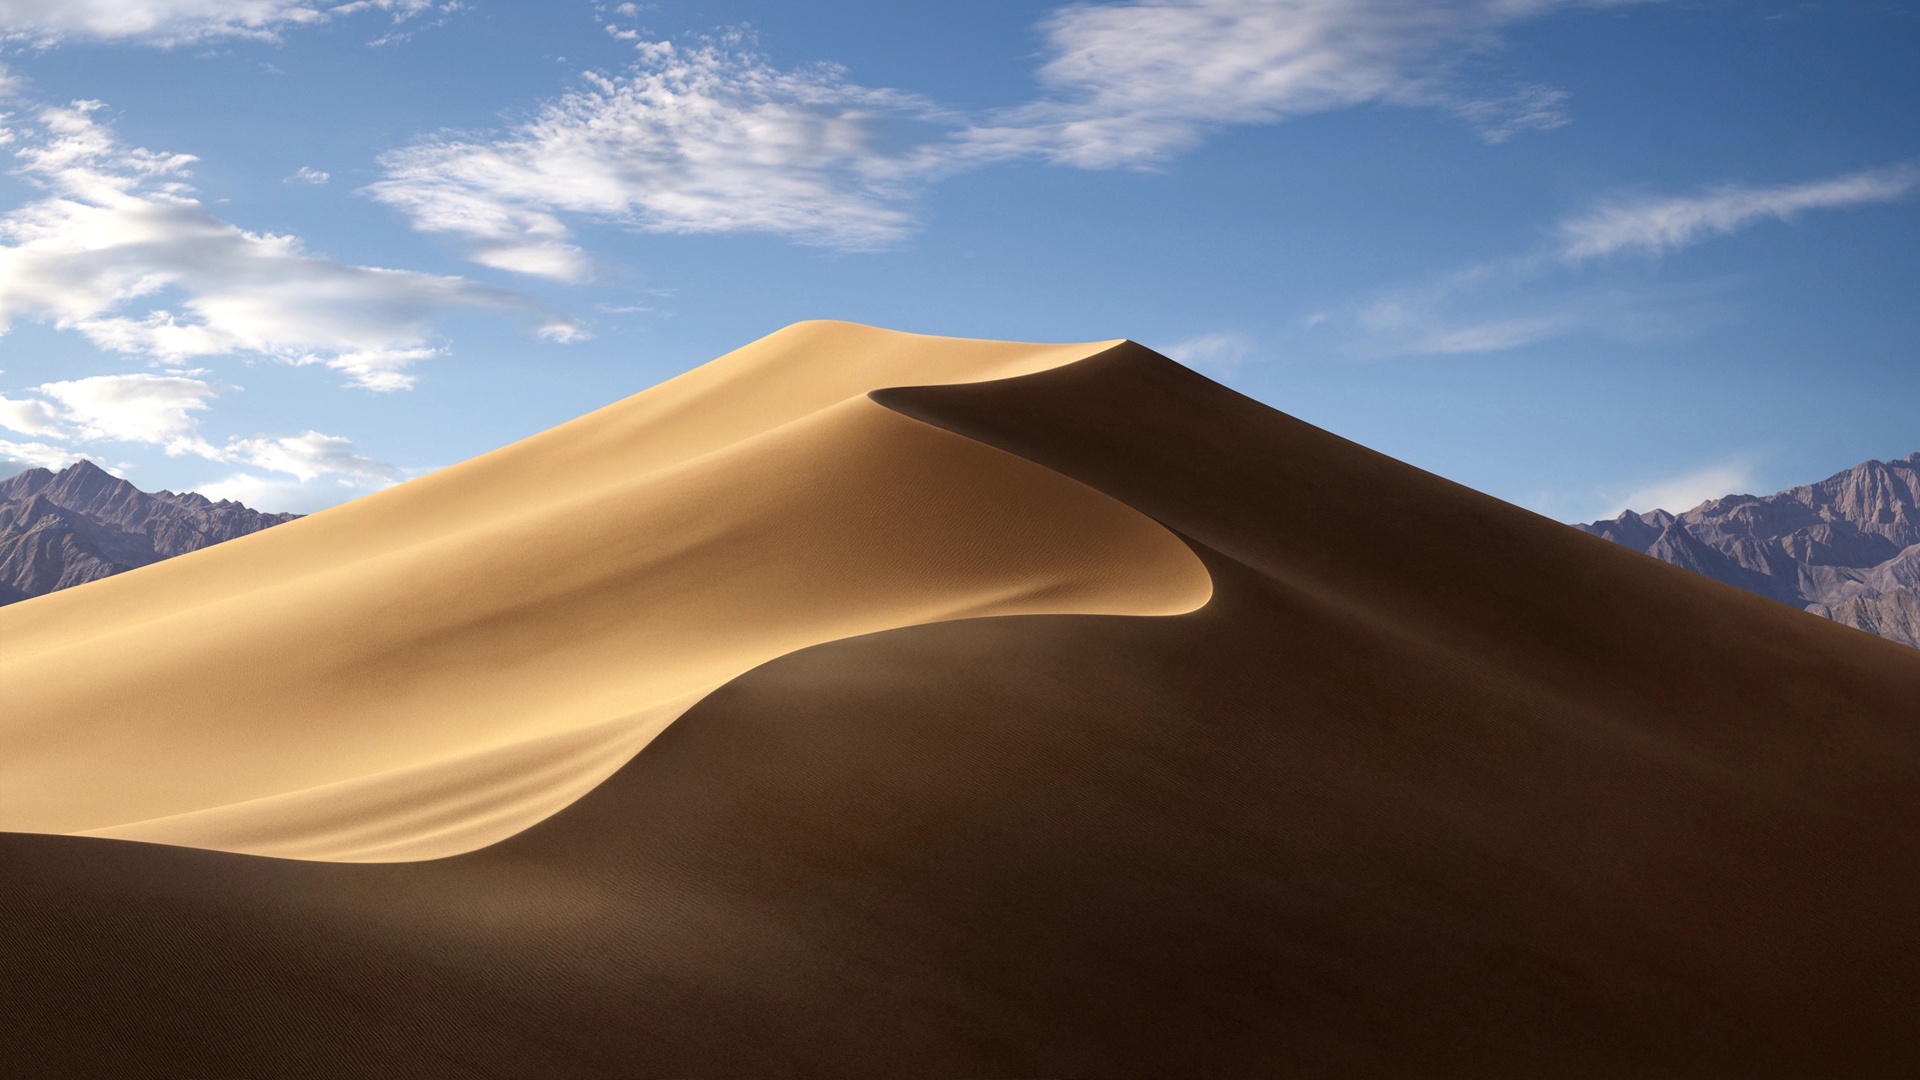 自然景观 苹果macOS Mojave 莫哈韦沙漠白天风景壁纸壁纸